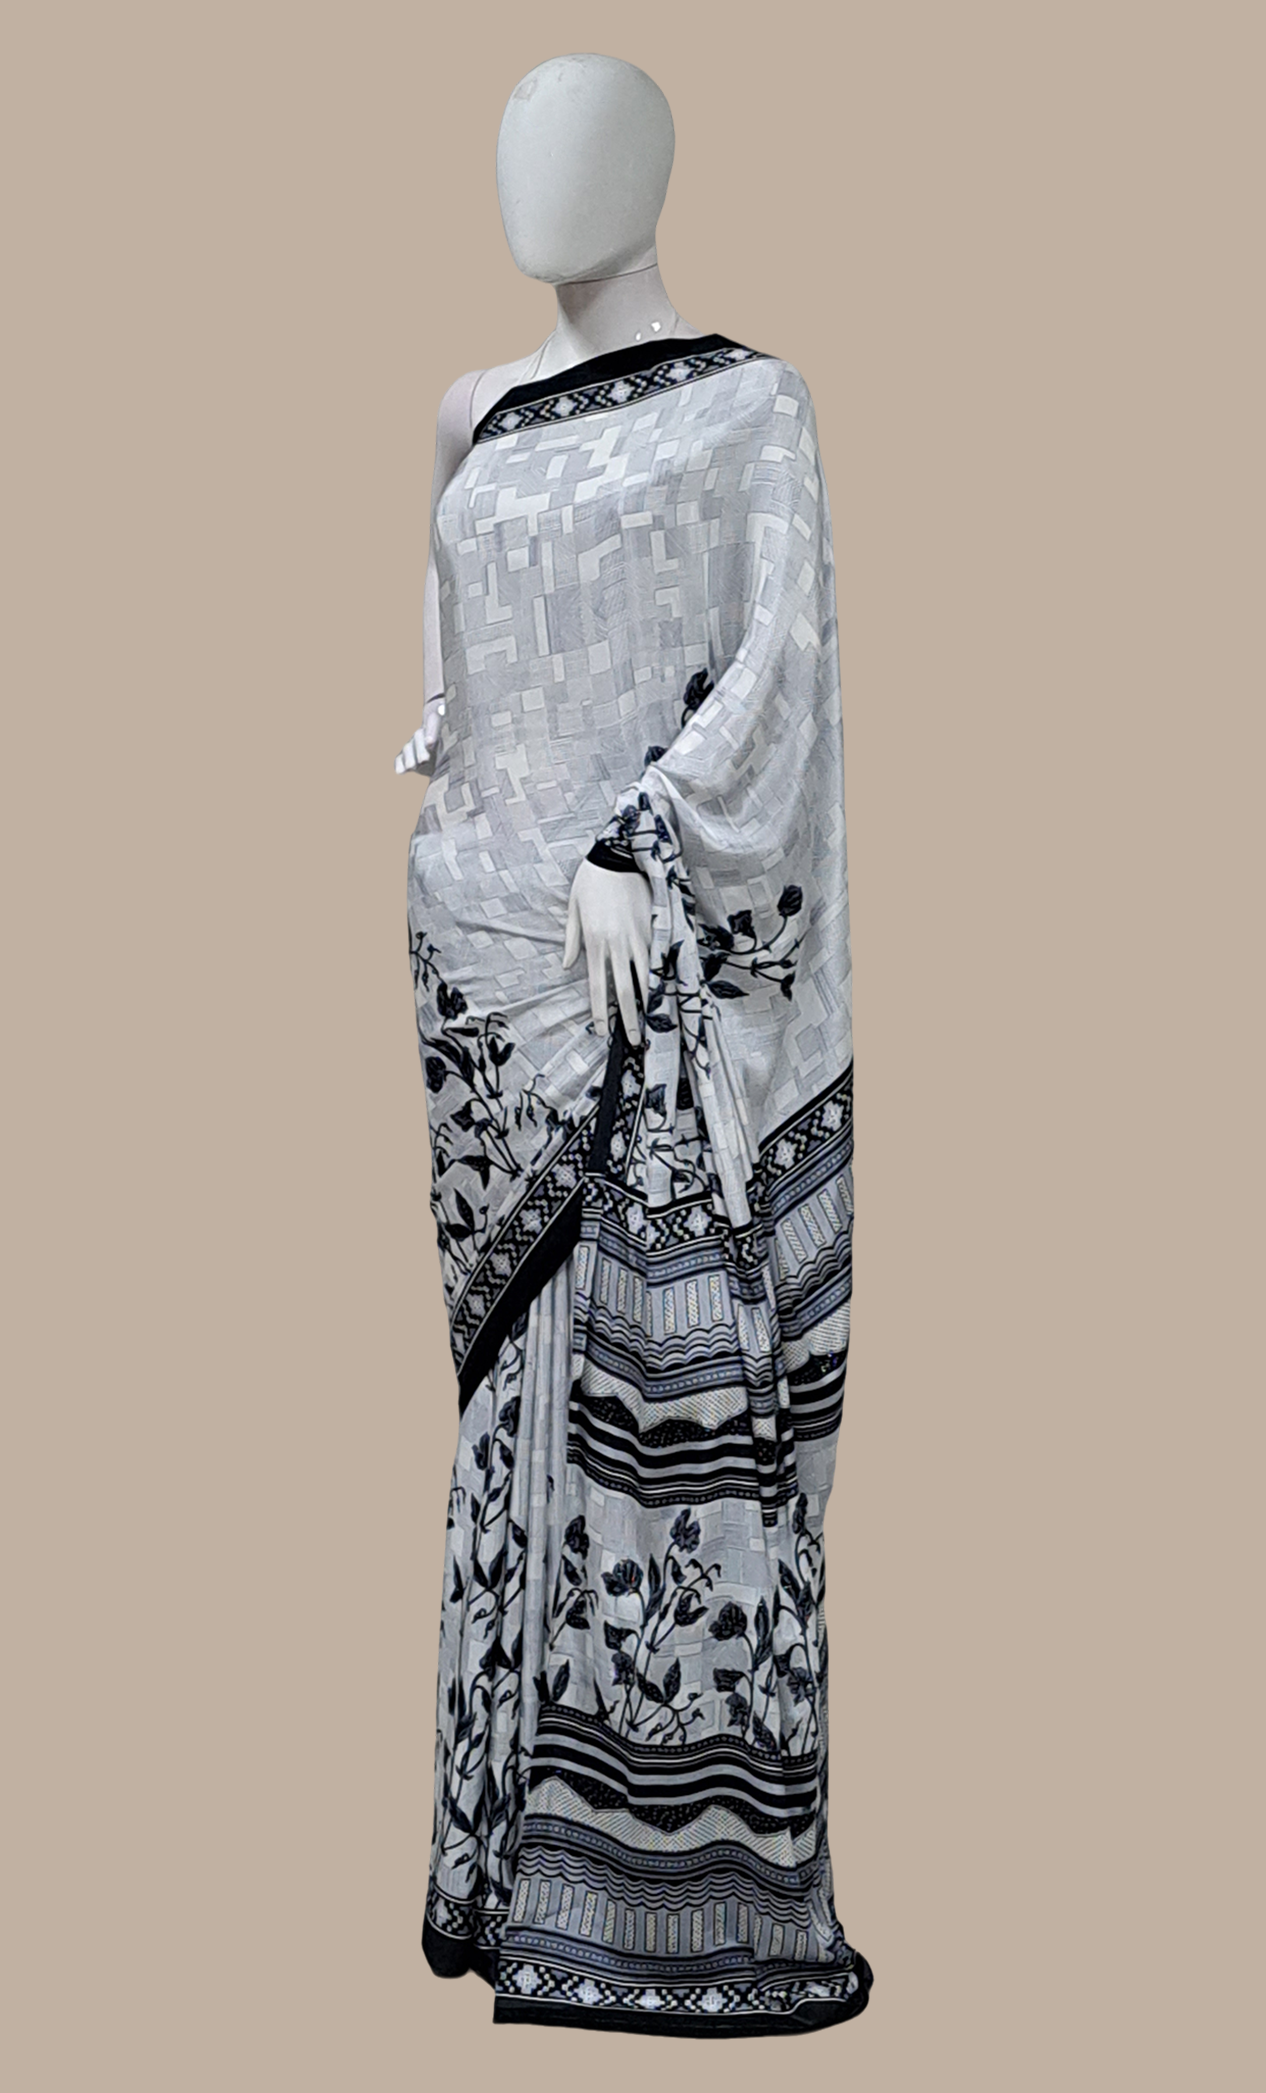 Black Floral Printed Sari